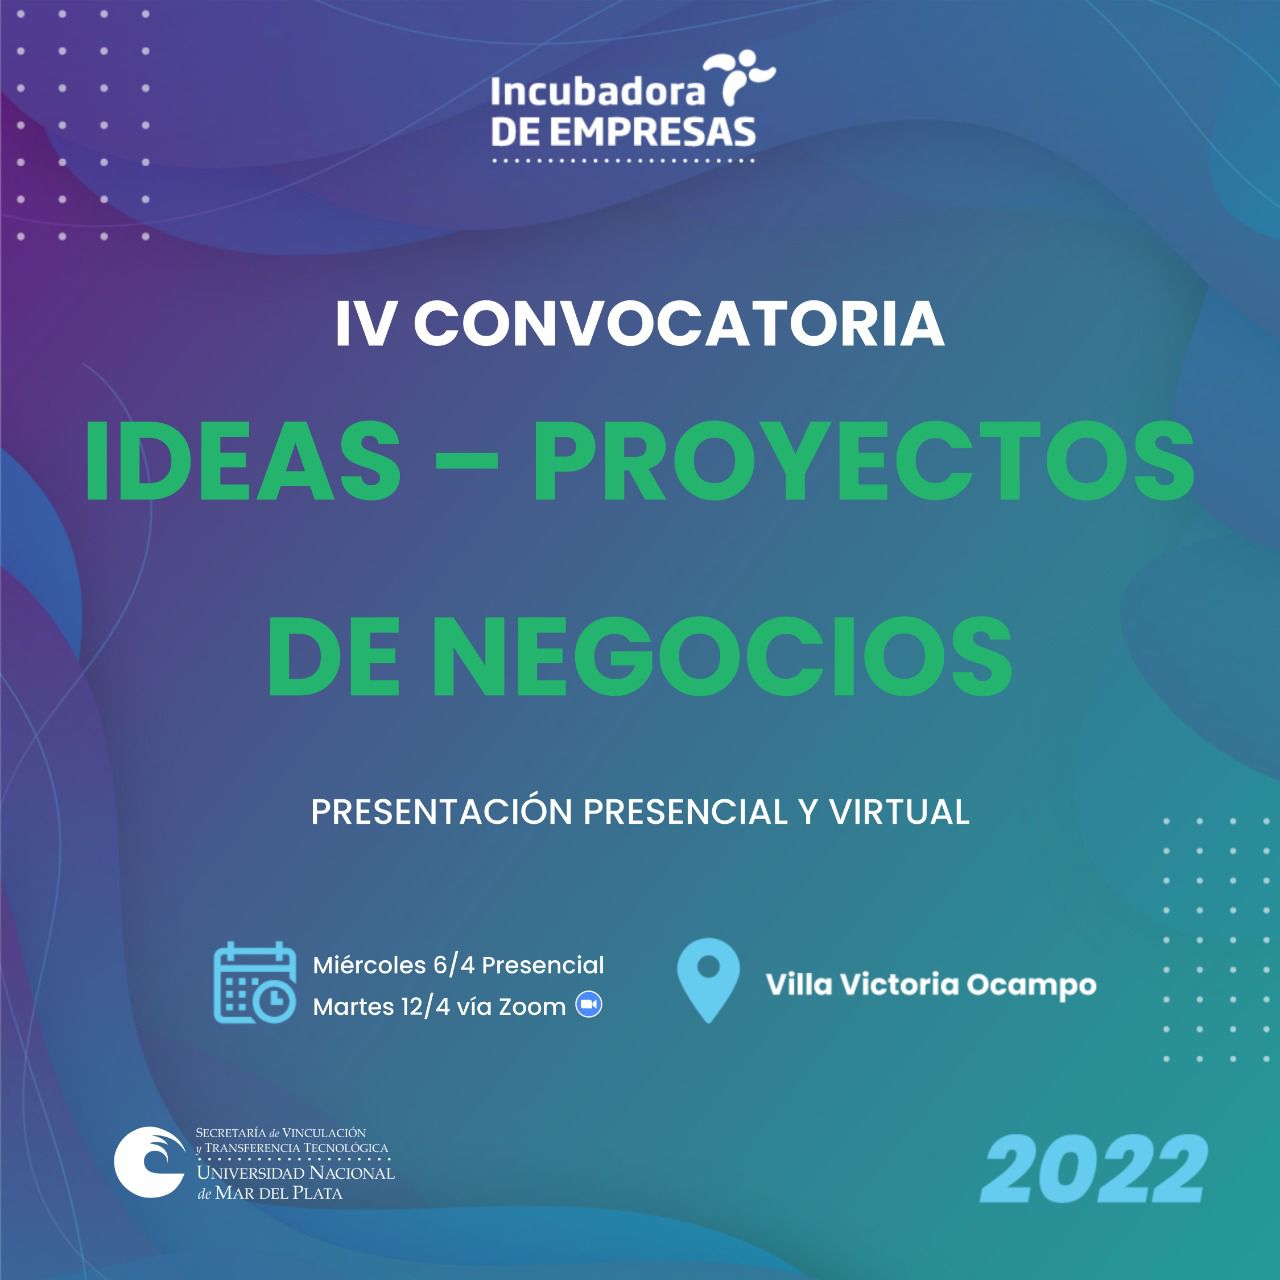 La incubadora de empresas de la UNMDP lanza la convocatoria de ideas y proyectos de negocio del ámbito tecnológico